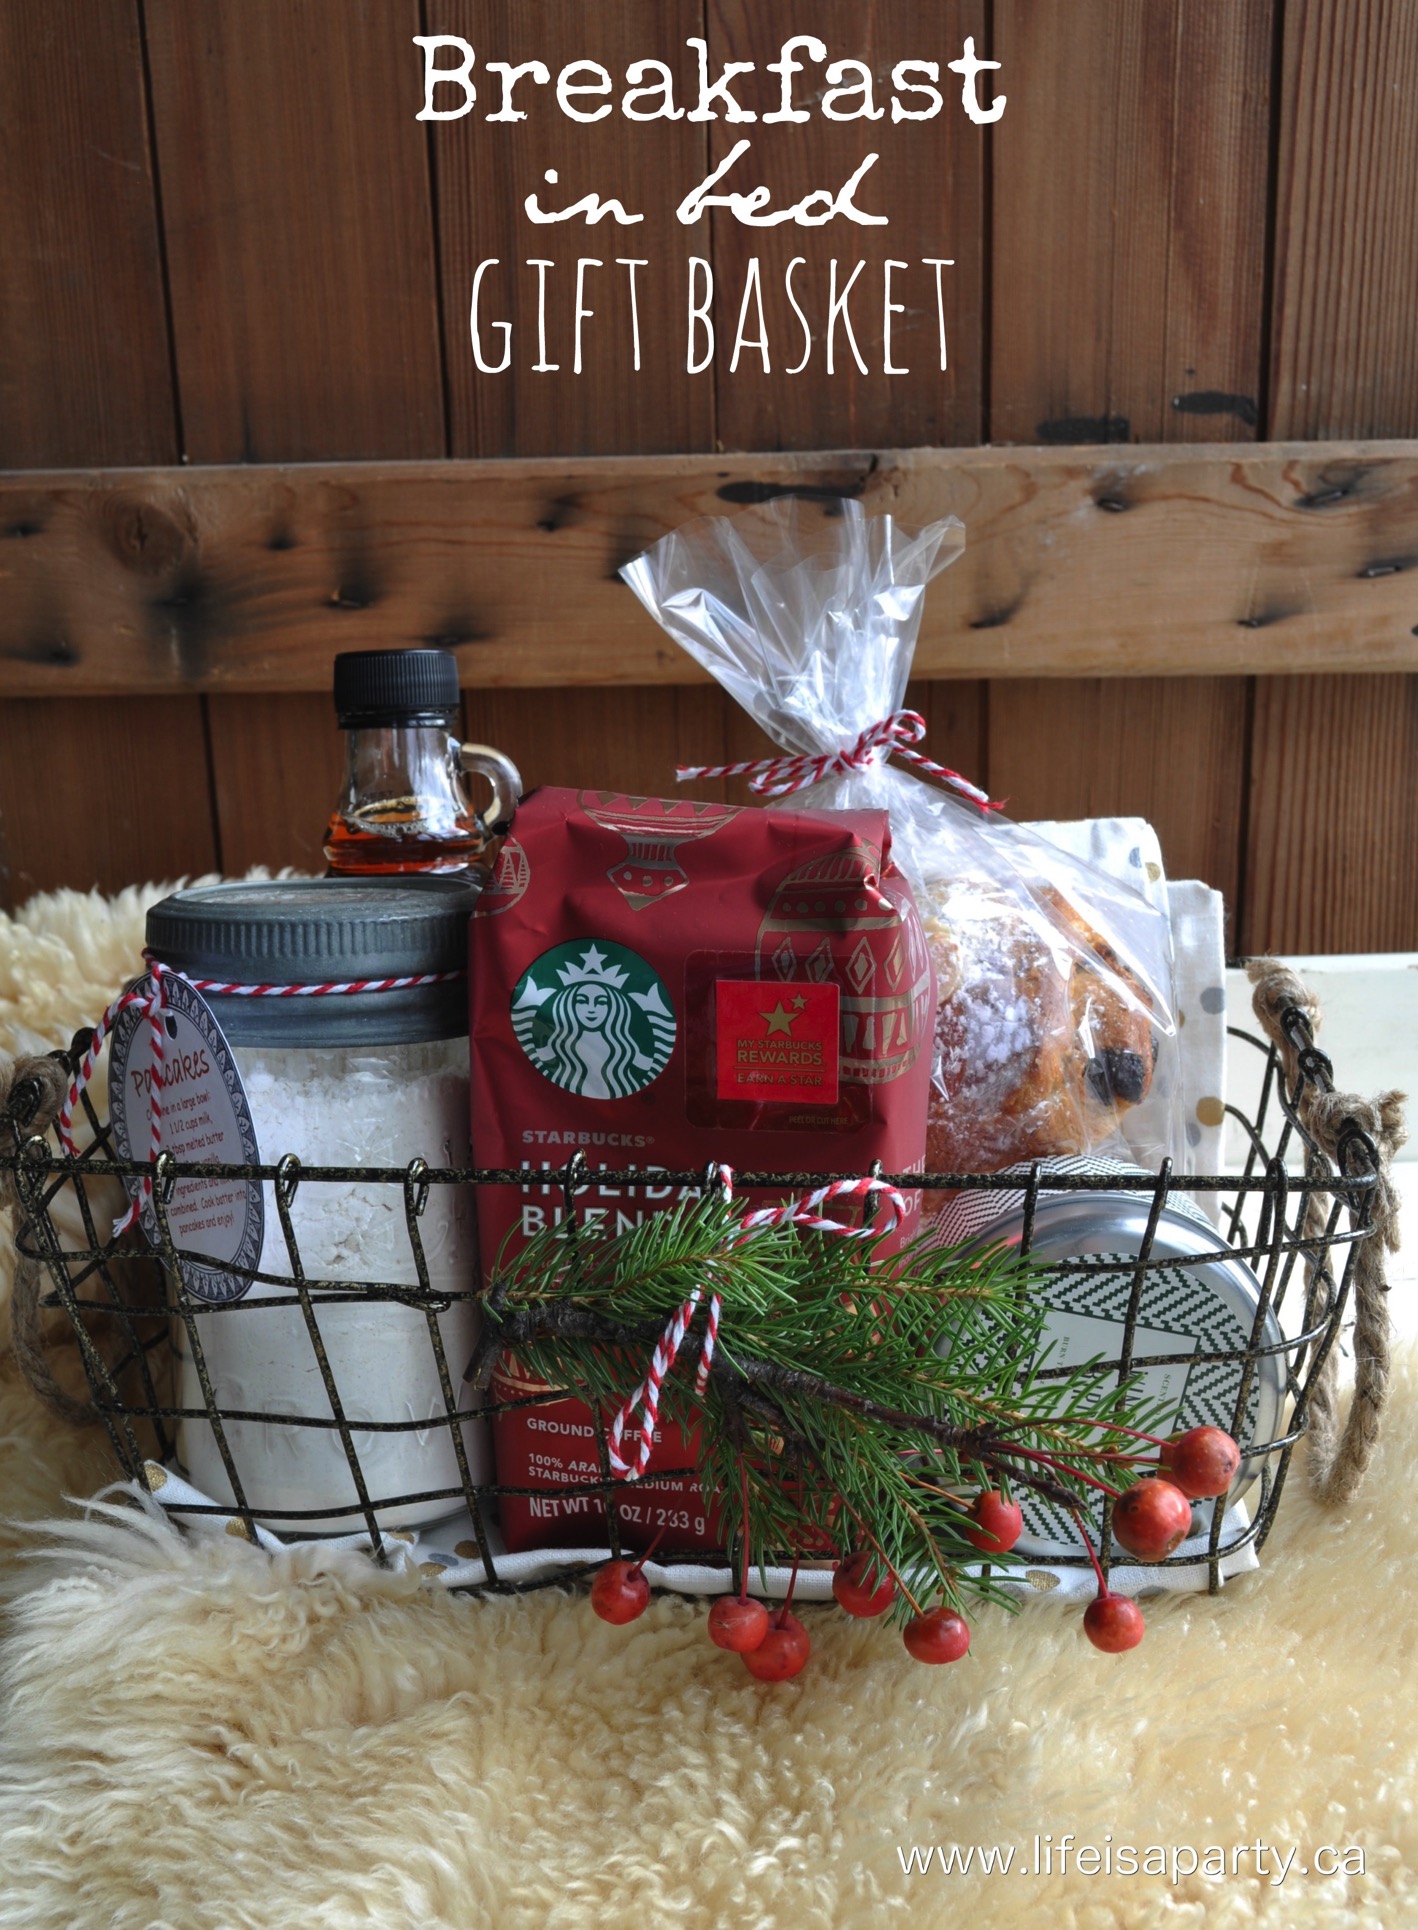 https://www.theidearoom.net/wp-content/uploads/2016/10/breakfast-basket-gift-1.1.jpg